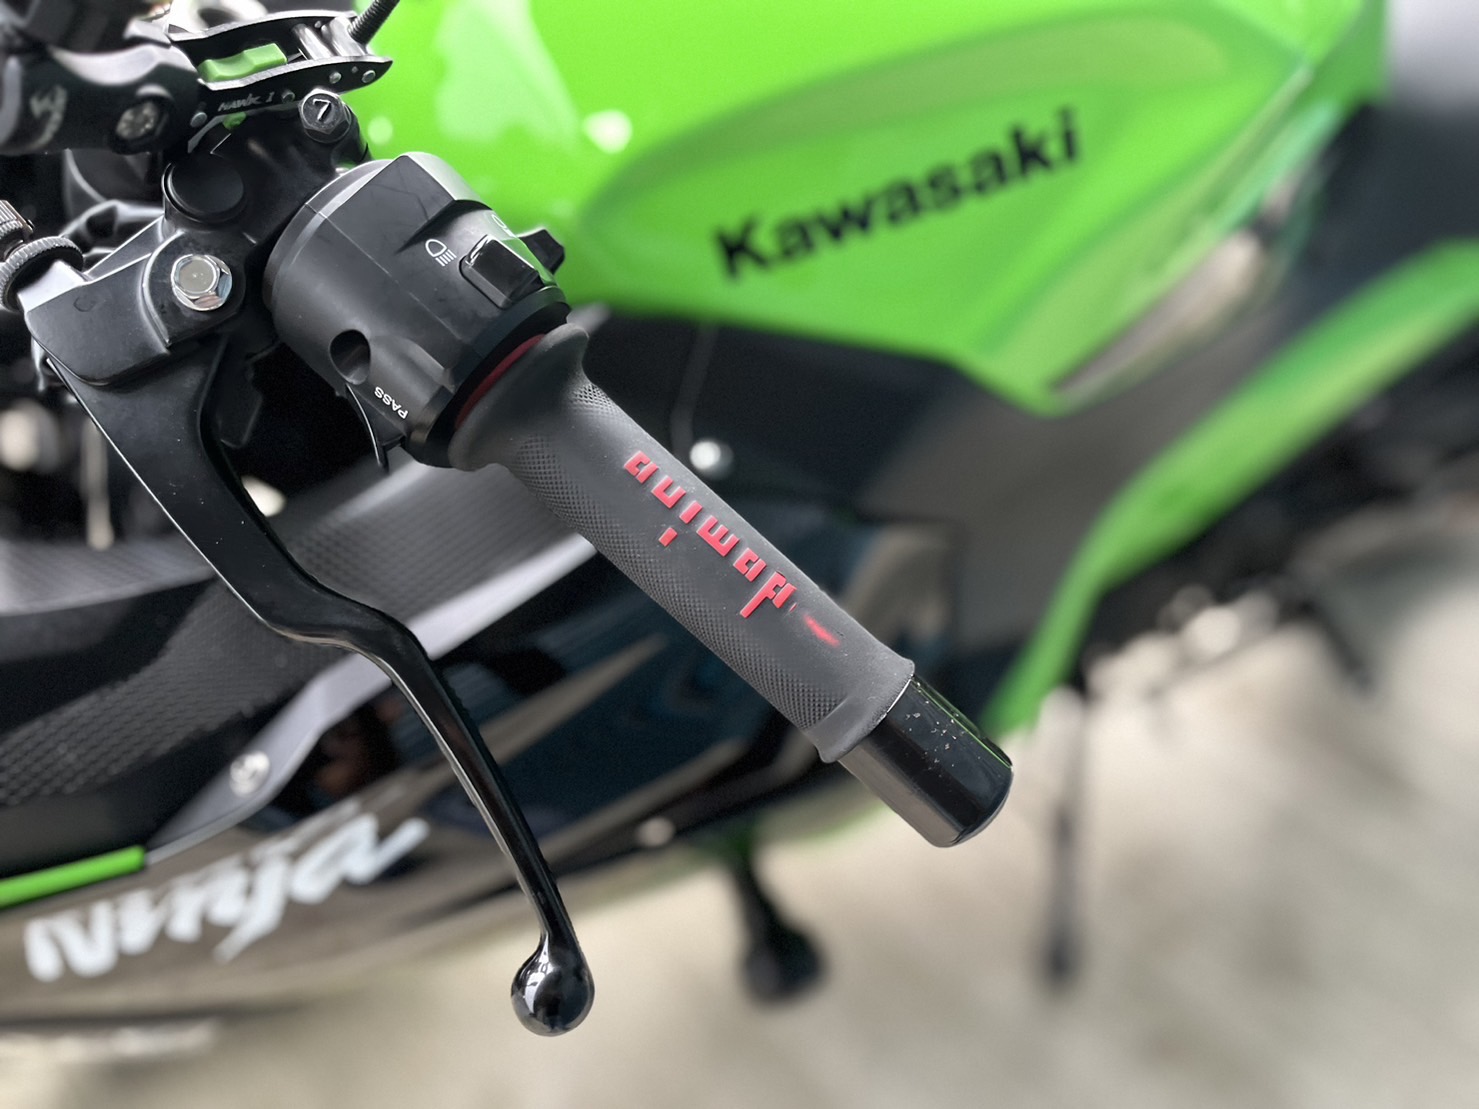 KAWASAKI NINJA400 - 中古/二手車出售中 改裝排氣管 W!ZH腳踏後移 行車記錄器 小資族二手重機買賣 | 小資族二手重機買賣